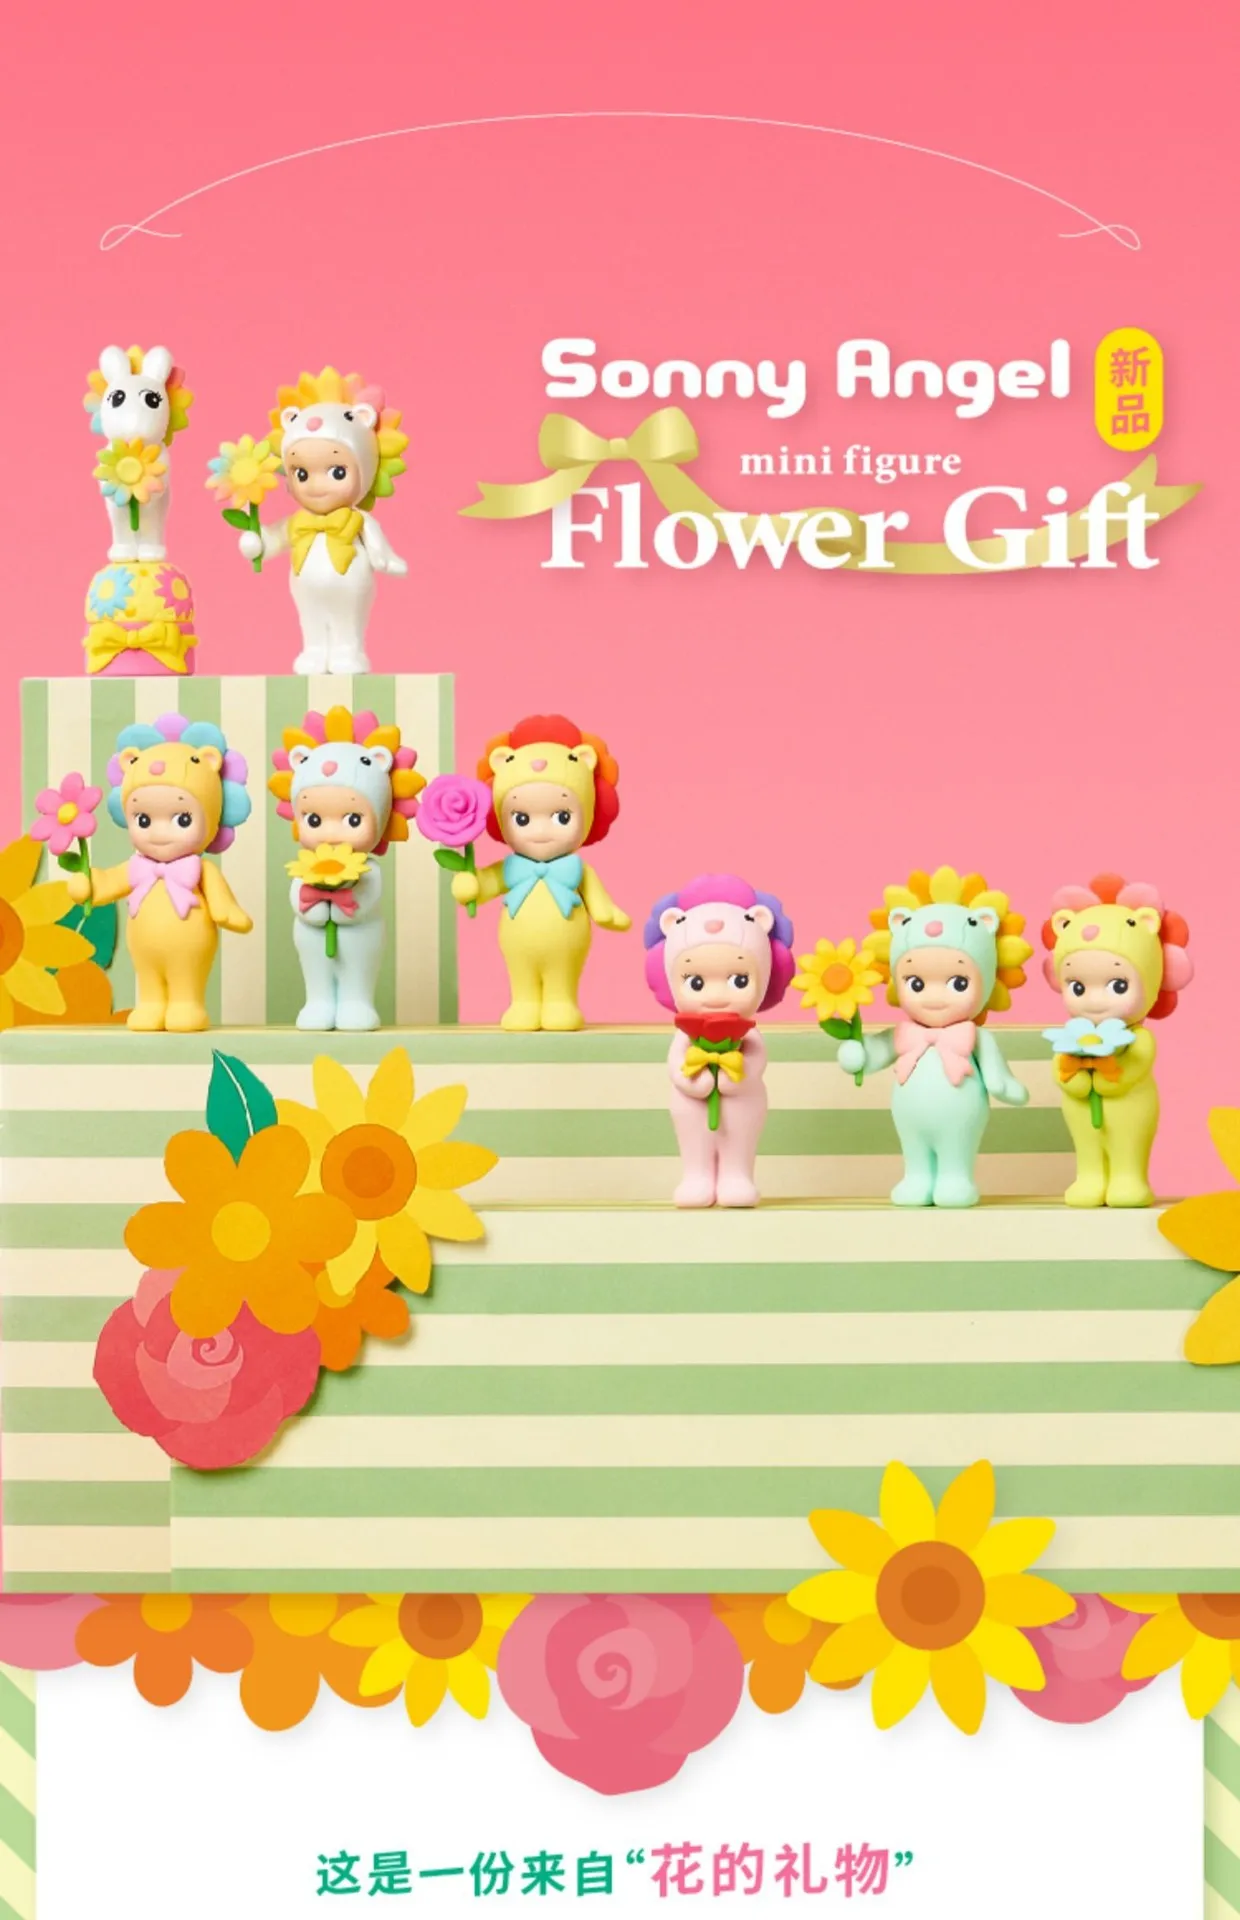 סוני אנג ' ל פרחים מתנה עיוור תיבת סדרת בובות קישוט ילדה היד מתנה מתנה קופסת המסתורין עם קשת חינניות אריה פרחים . ' - ' . 4